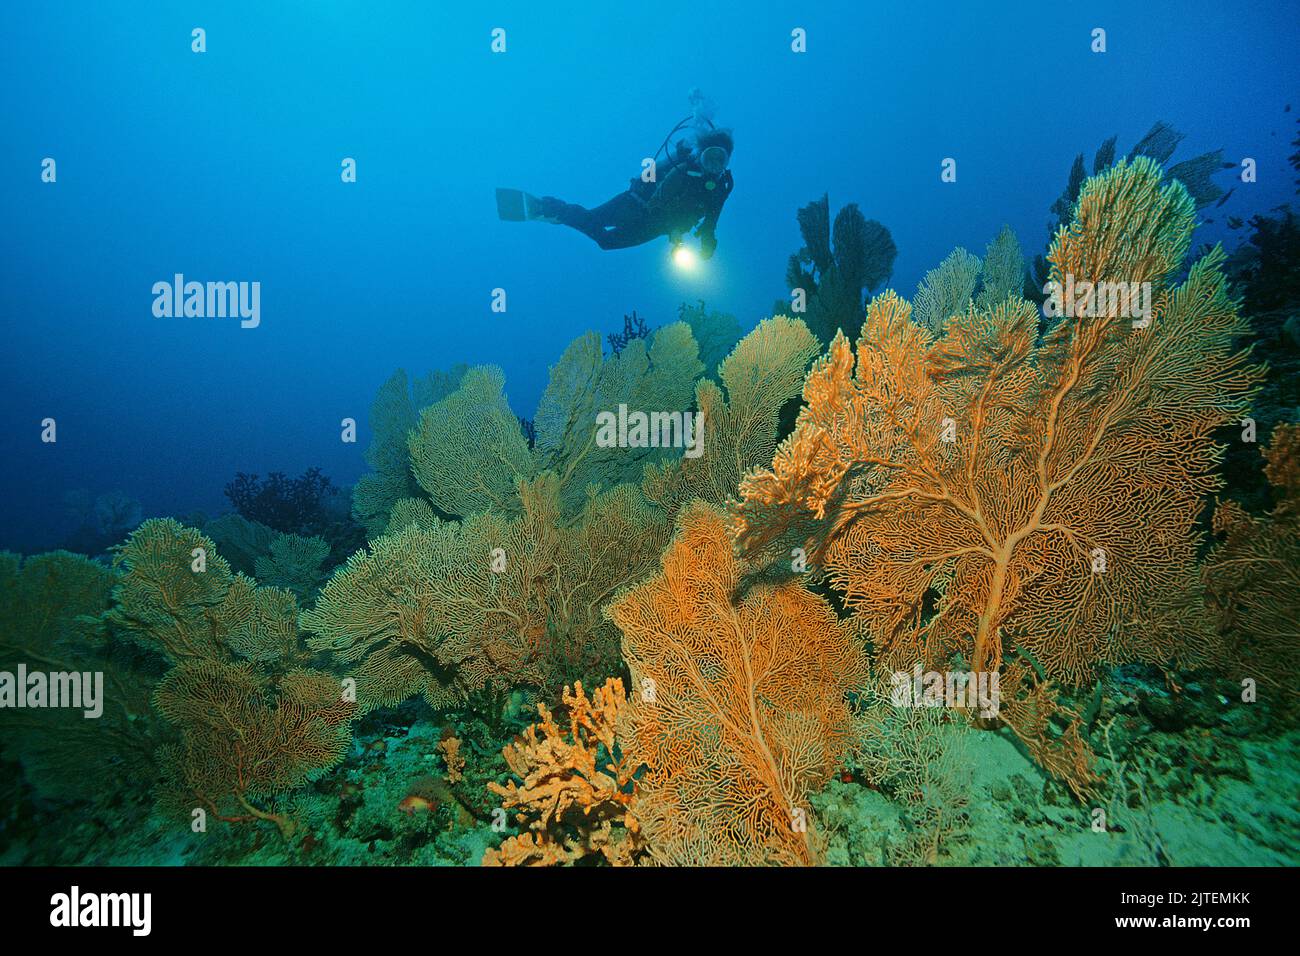 Bucea en un arrecife de coral con los fans del mar gigante (Annella mollis), Maldivas, Océano Índico, Asia Foto de stock